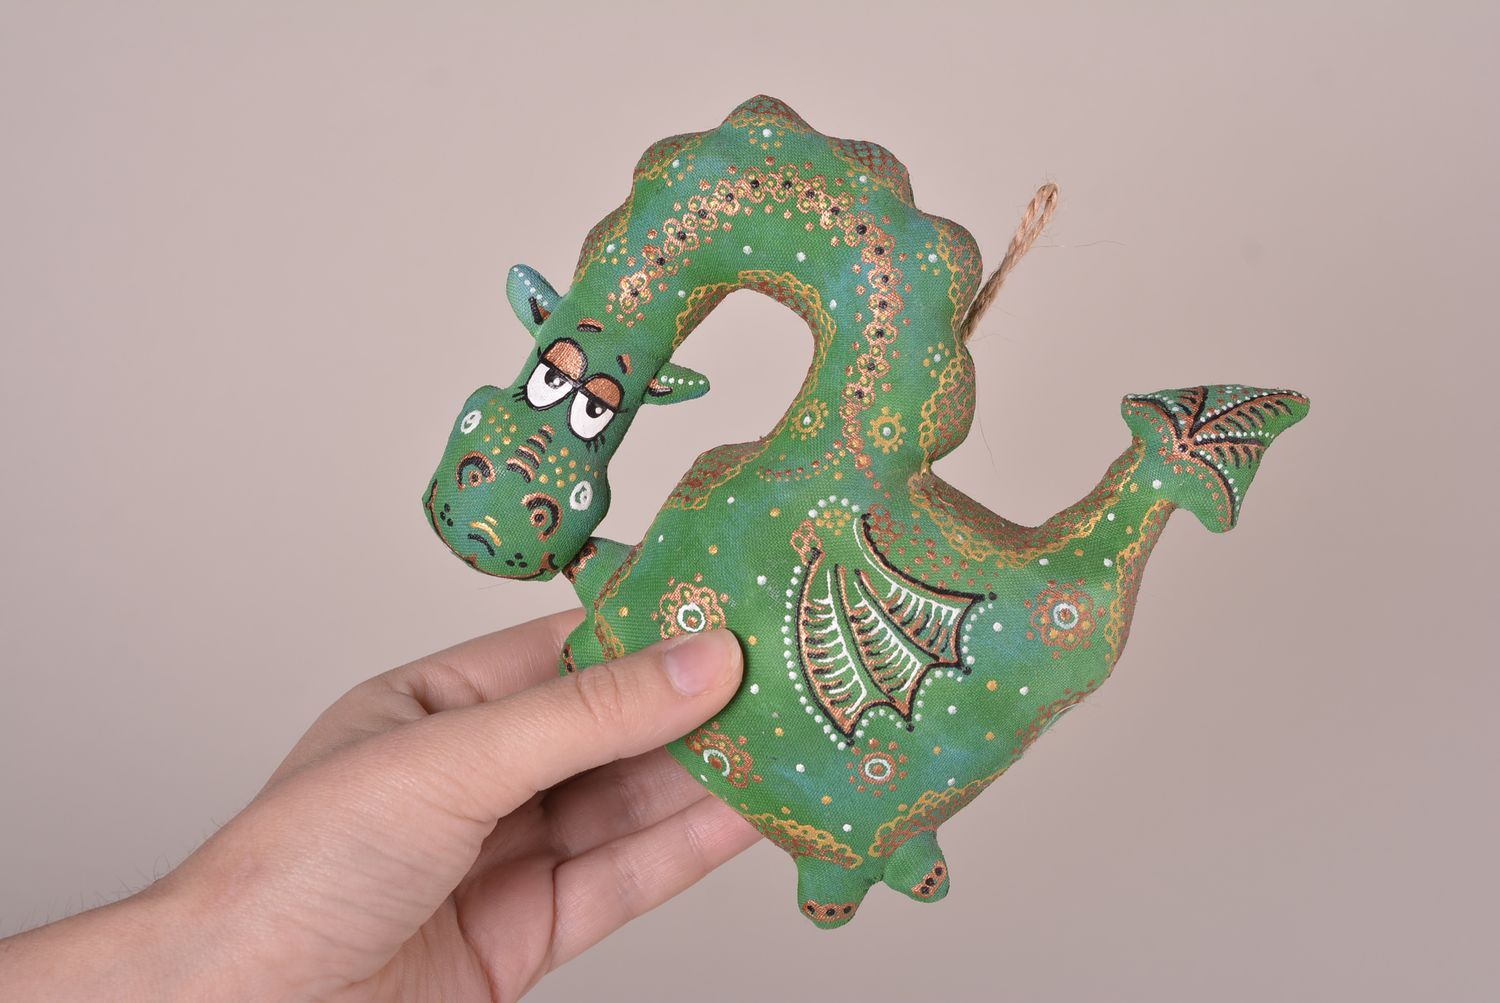 Handmade Stoff Tier ausgefallenes Spielzeug Geschenk Idee Drache zum Aufhängen foto 2